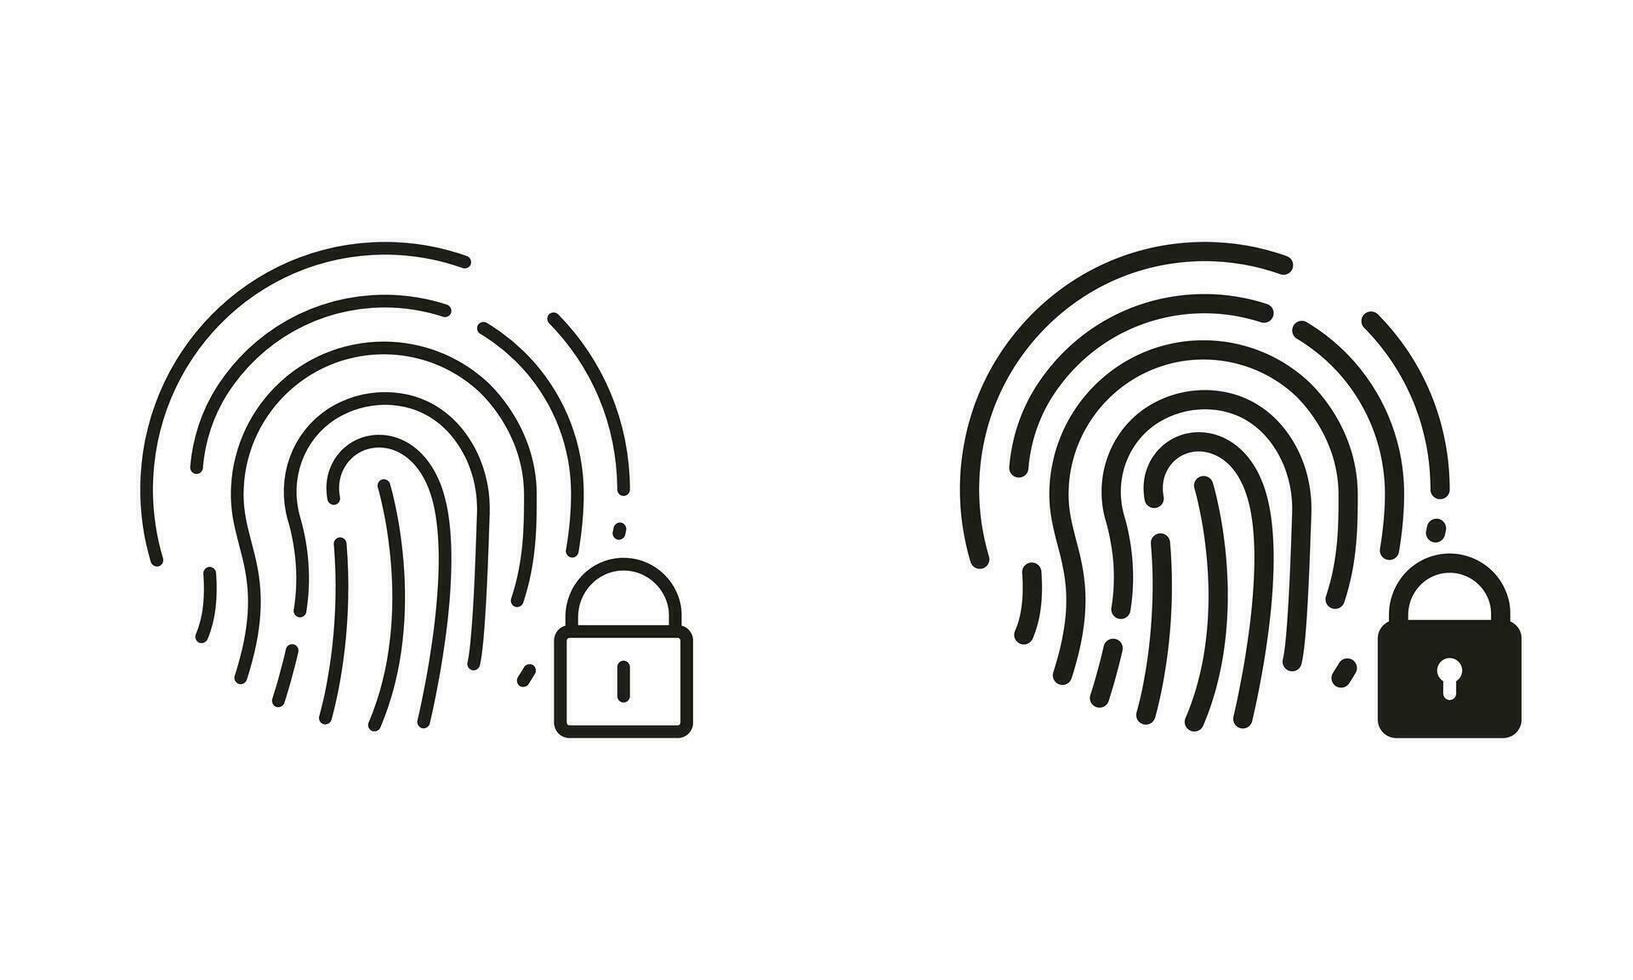 huella dactilar identificación línea y silueta negro icono colocar. dedo impresión escáner con bloquear símbolo recopilación. biométrico identidad signo. toque carné de identidad pictograma. aislado vector ilustración.